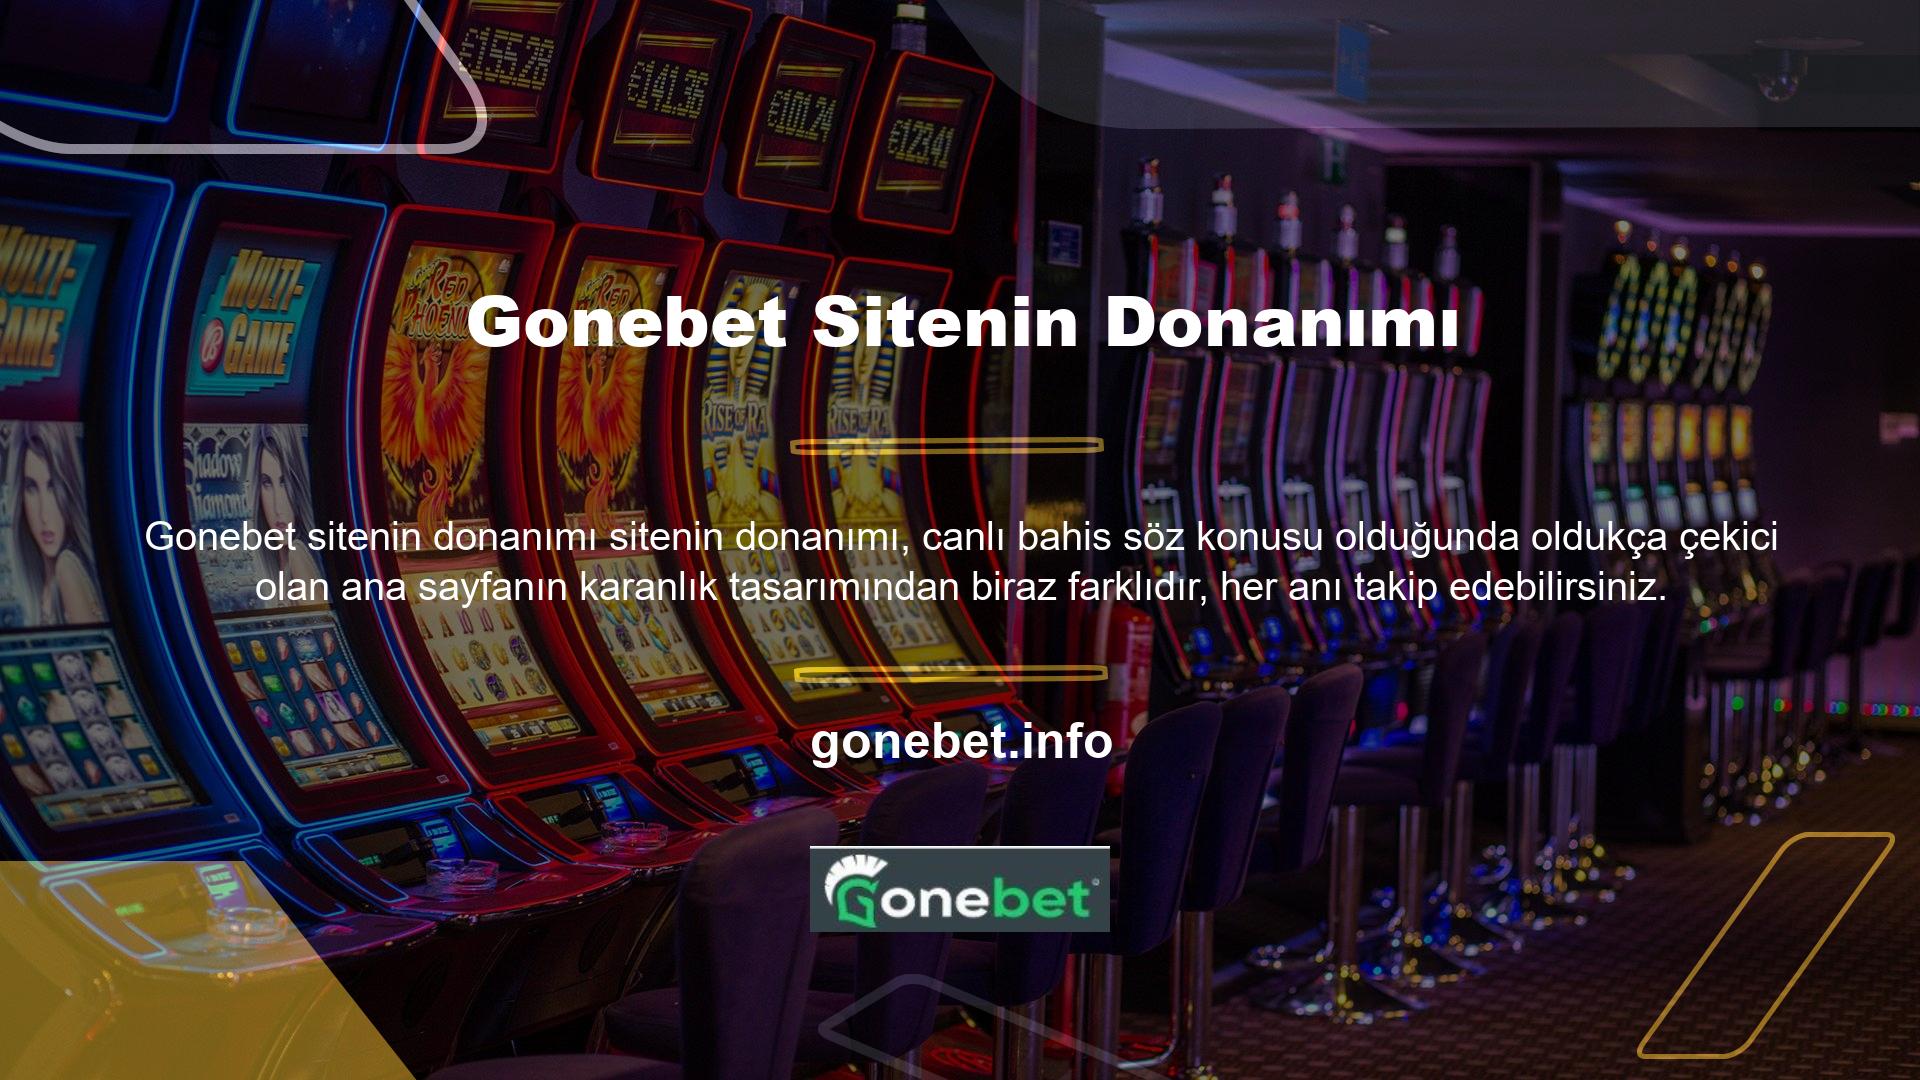 Gonebet, tüm abonelerin en son oranları ve oyunları takip edebileceği masaüstü ve mobil canlı bahisler için tek bir yere sahiptir